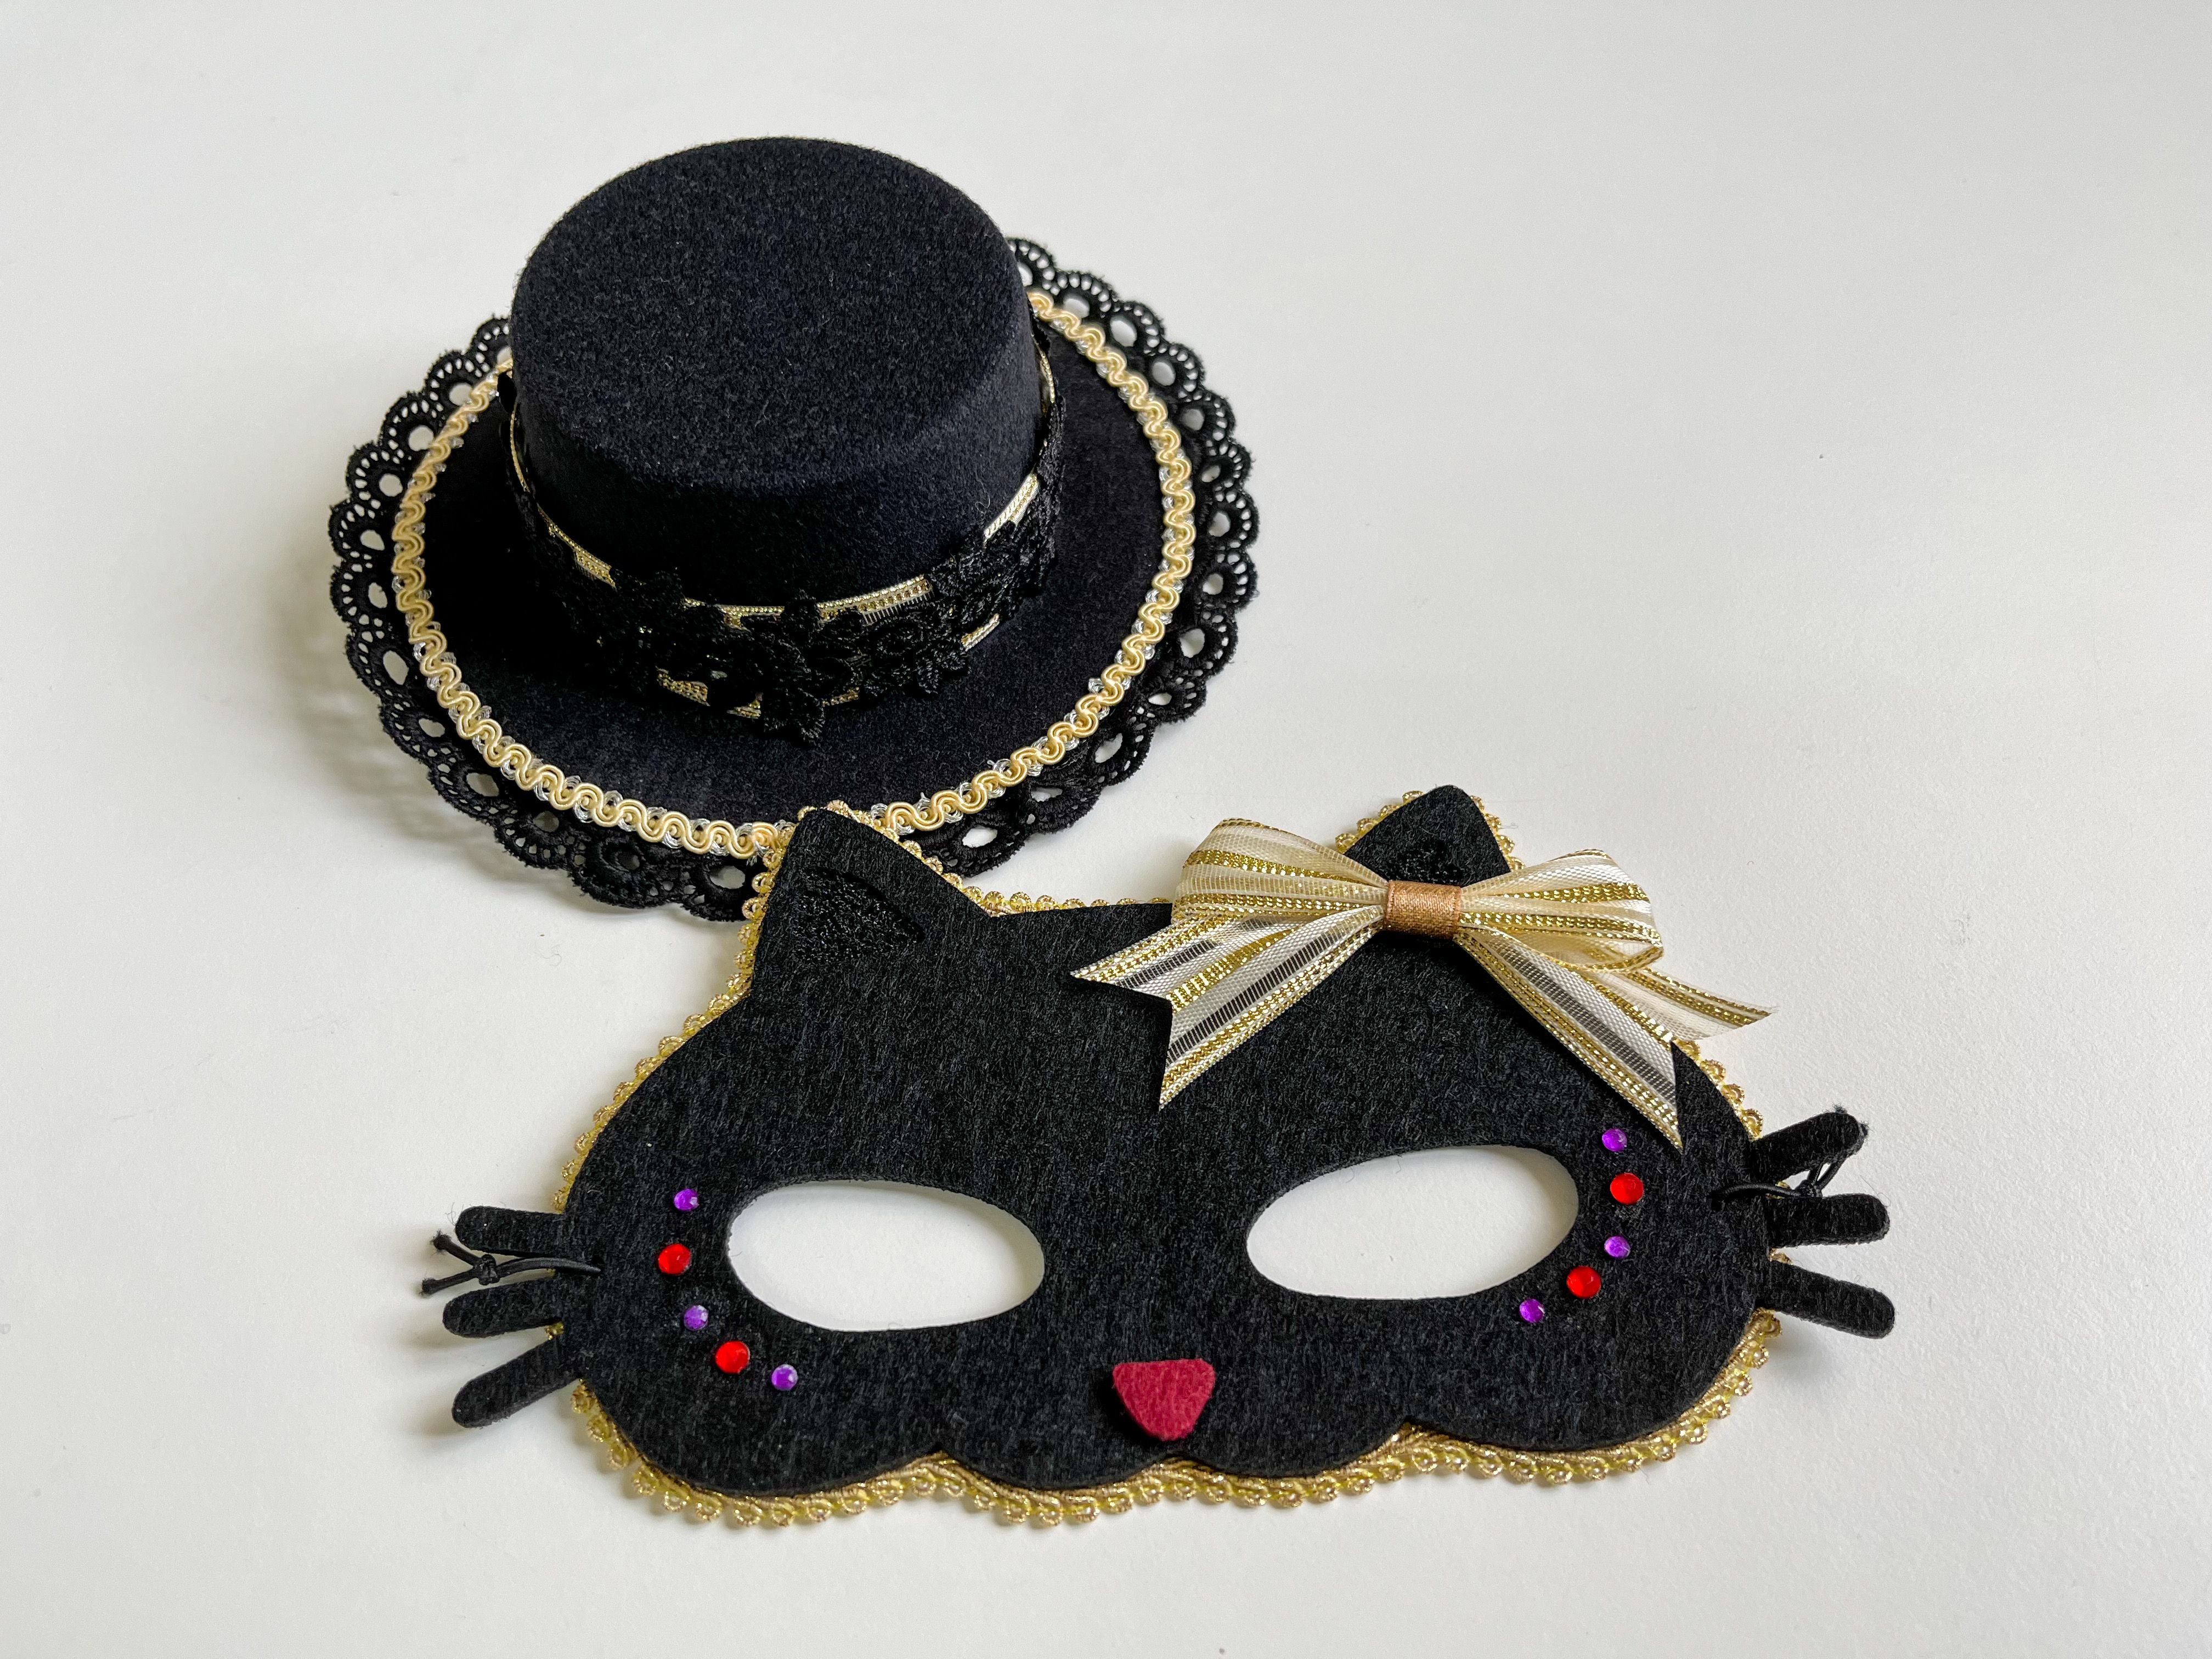 自製的小帽子+貓面具